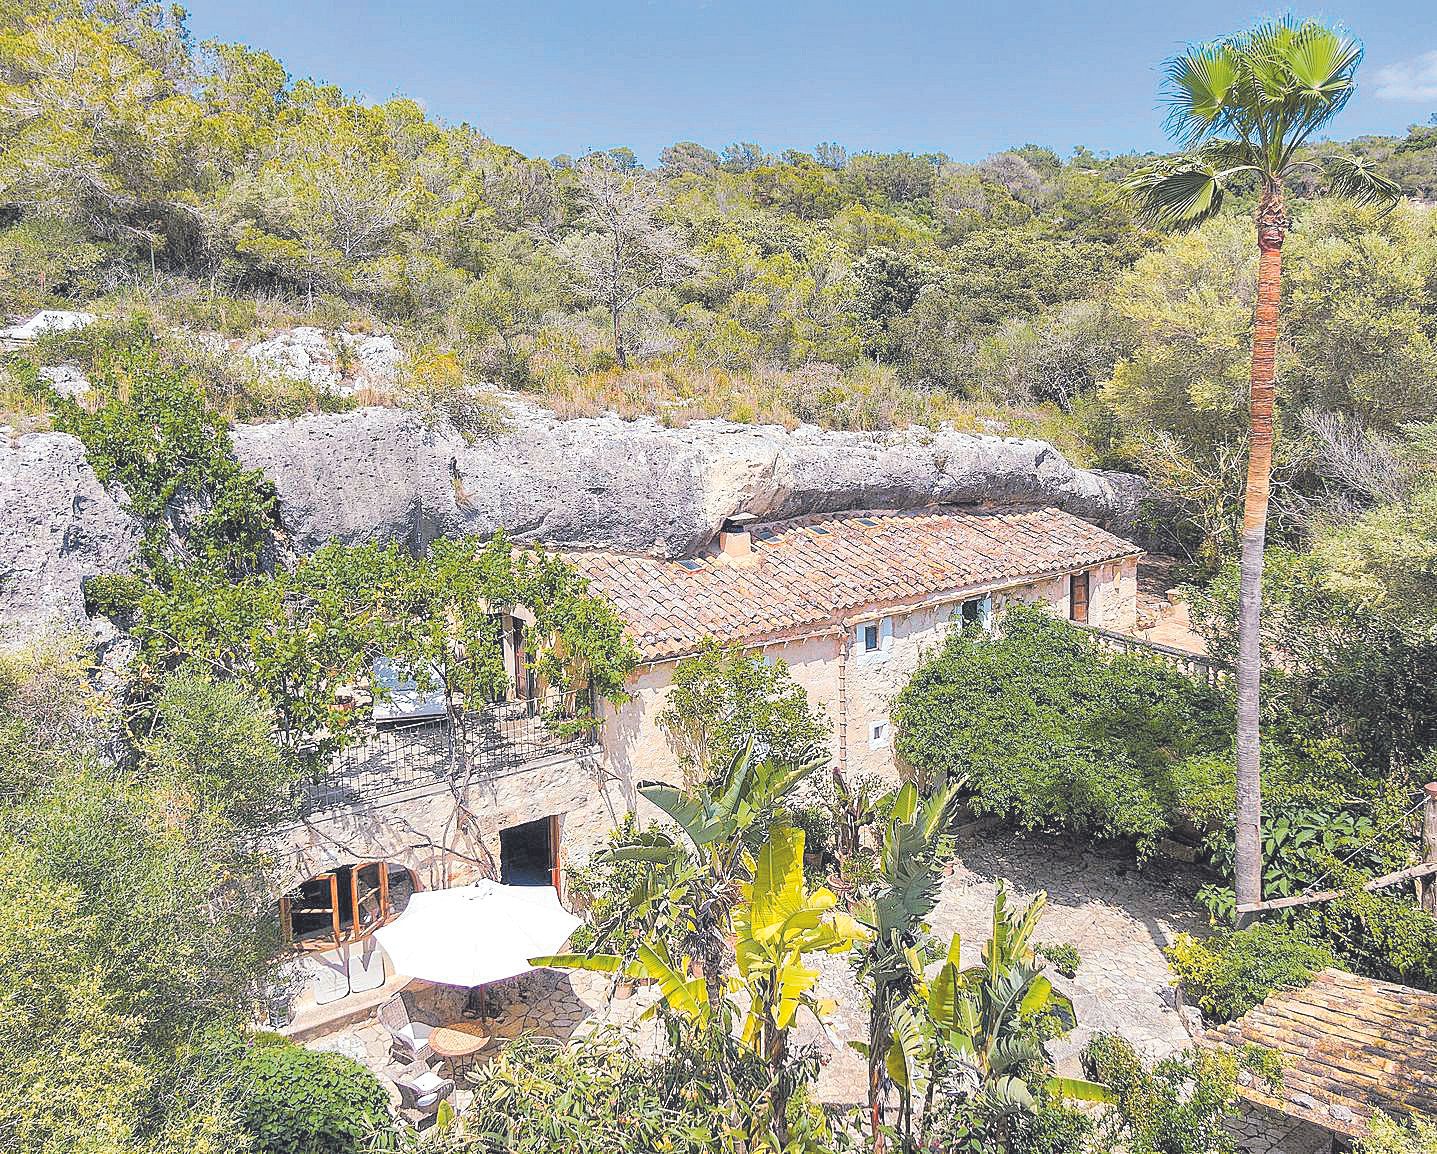 Vivir en una casa-cueva también es cosa de millonarios en Mallorca